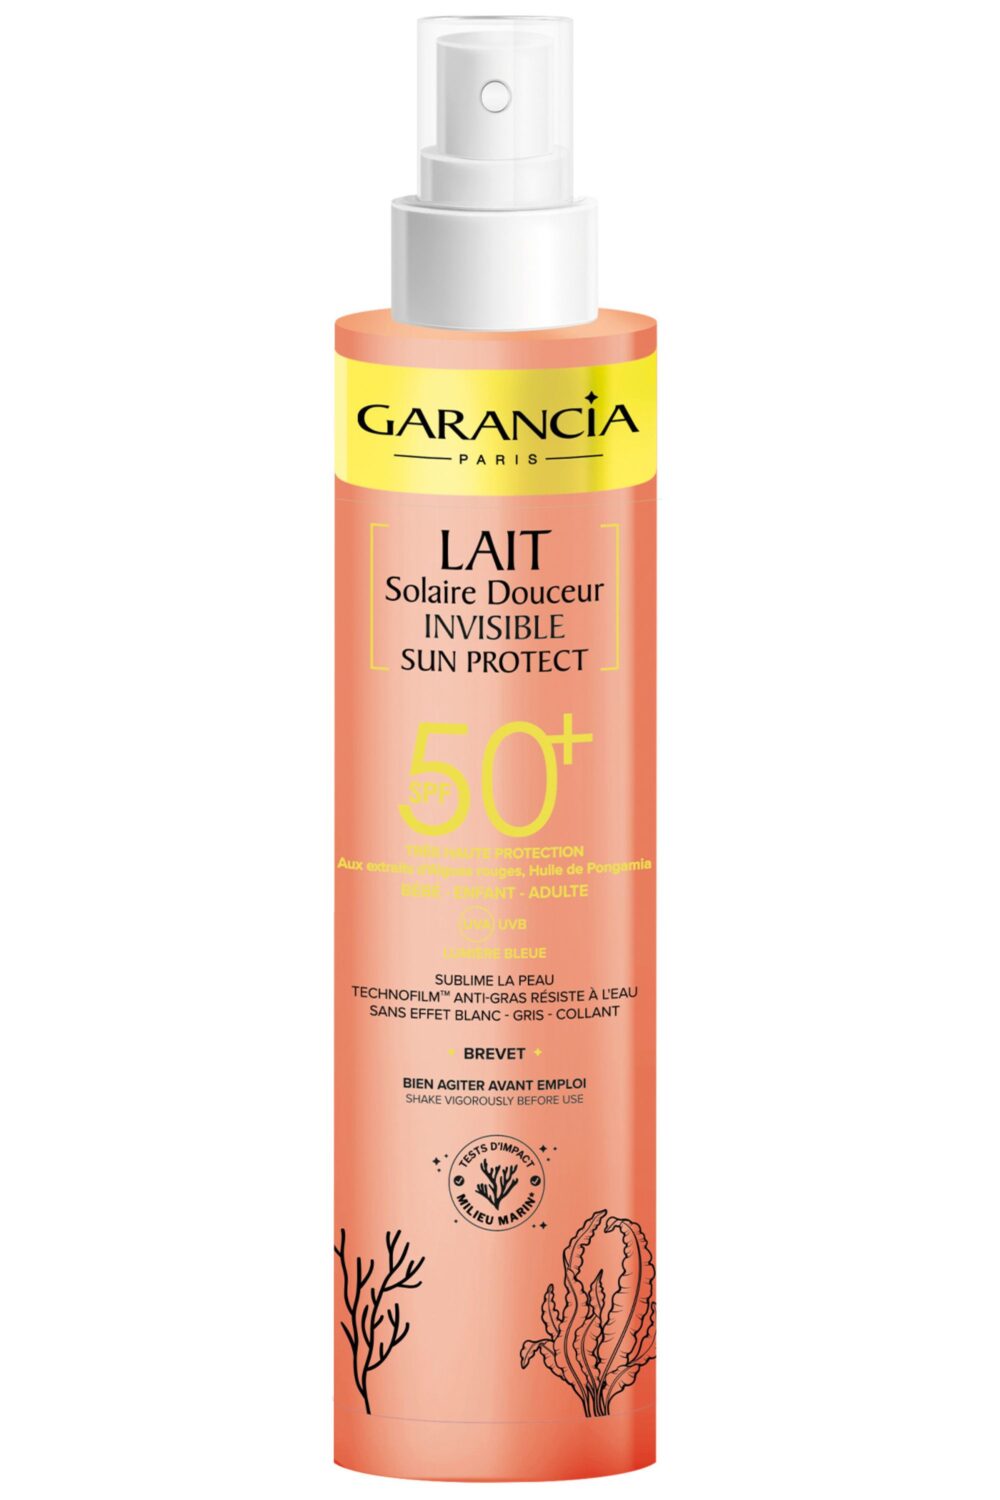 Garancia - Lait Solaire Douceur Invisible Sun Protect SPF50+